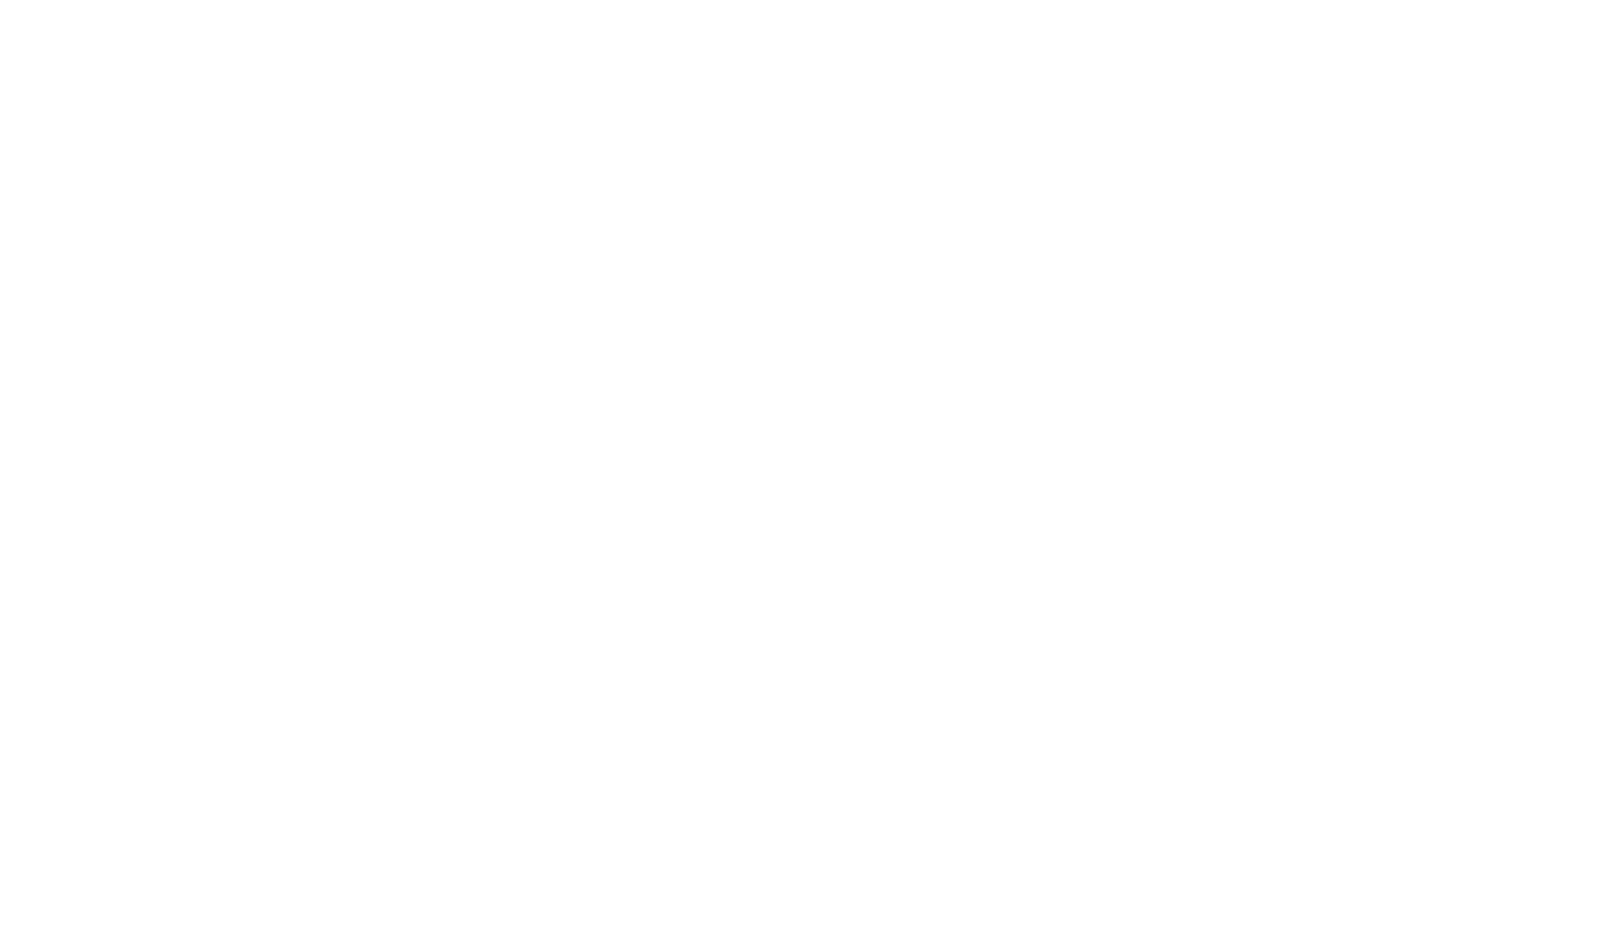 でんぱ組.inc 最新ツアーからの「ムーンライト伝説」ライブパフォーマンス映像も収録のDVDが限定発売決定サムネイル画像!